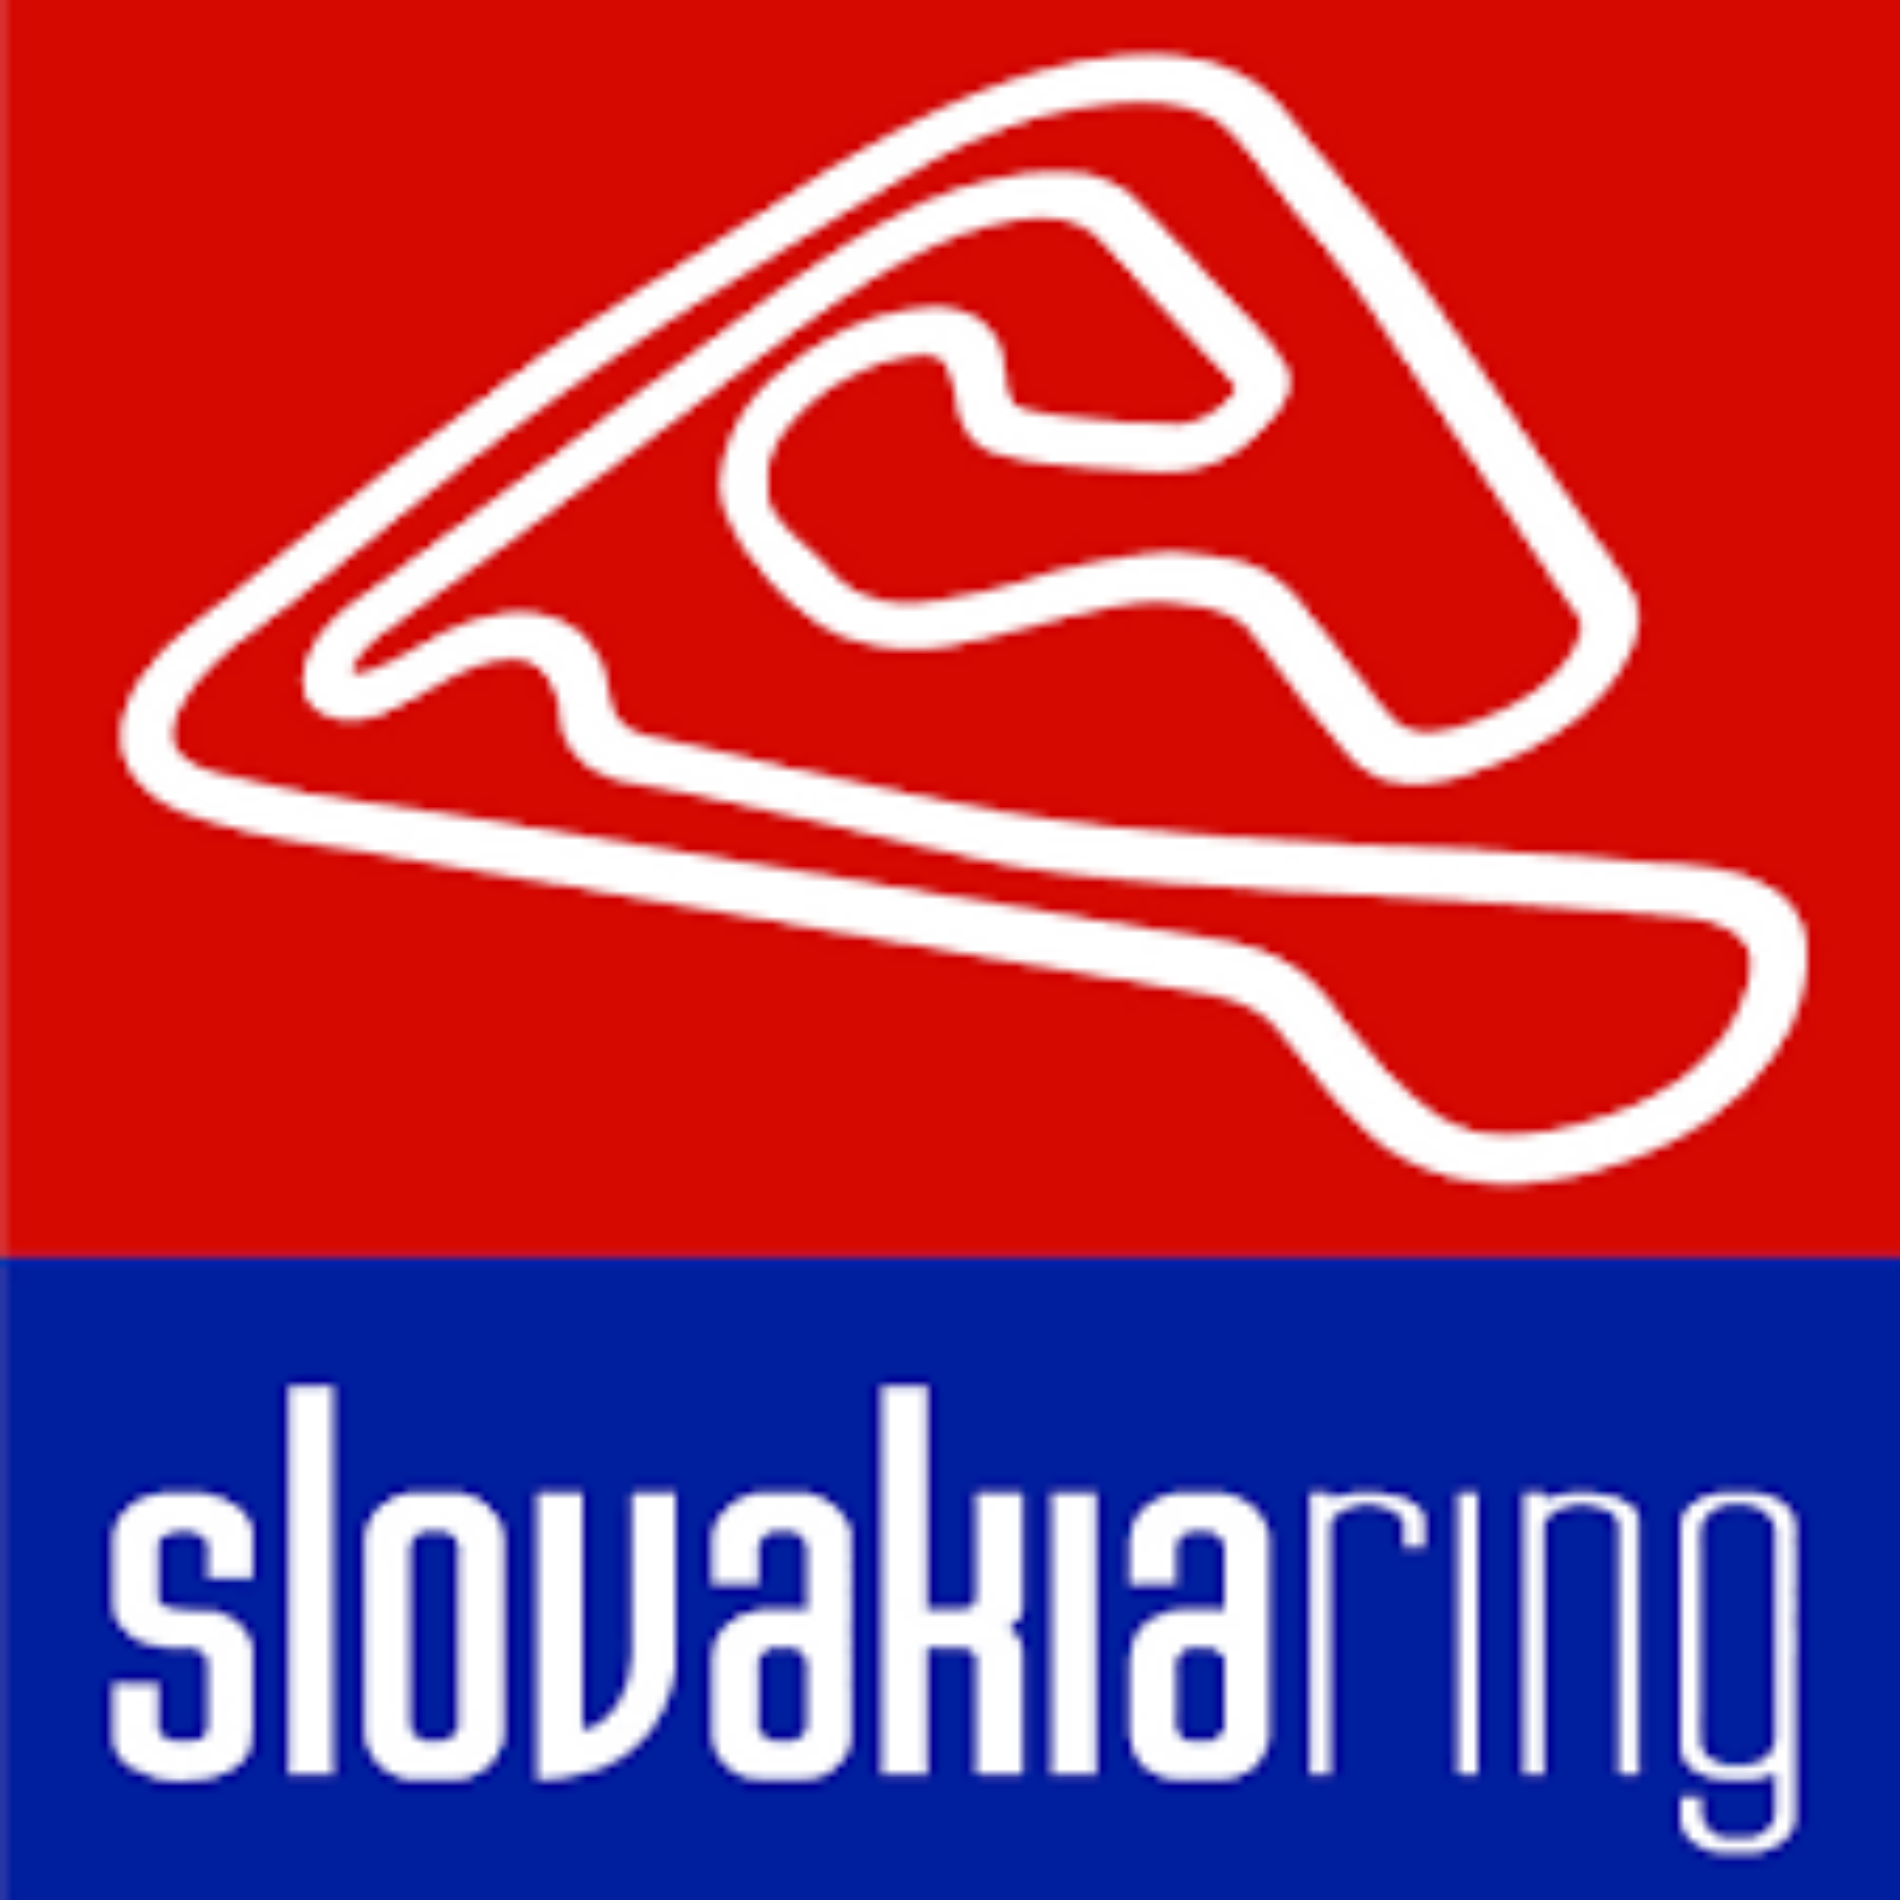 Previo | Slovakiaring | Todo preparado para el comienzo de campeonato.